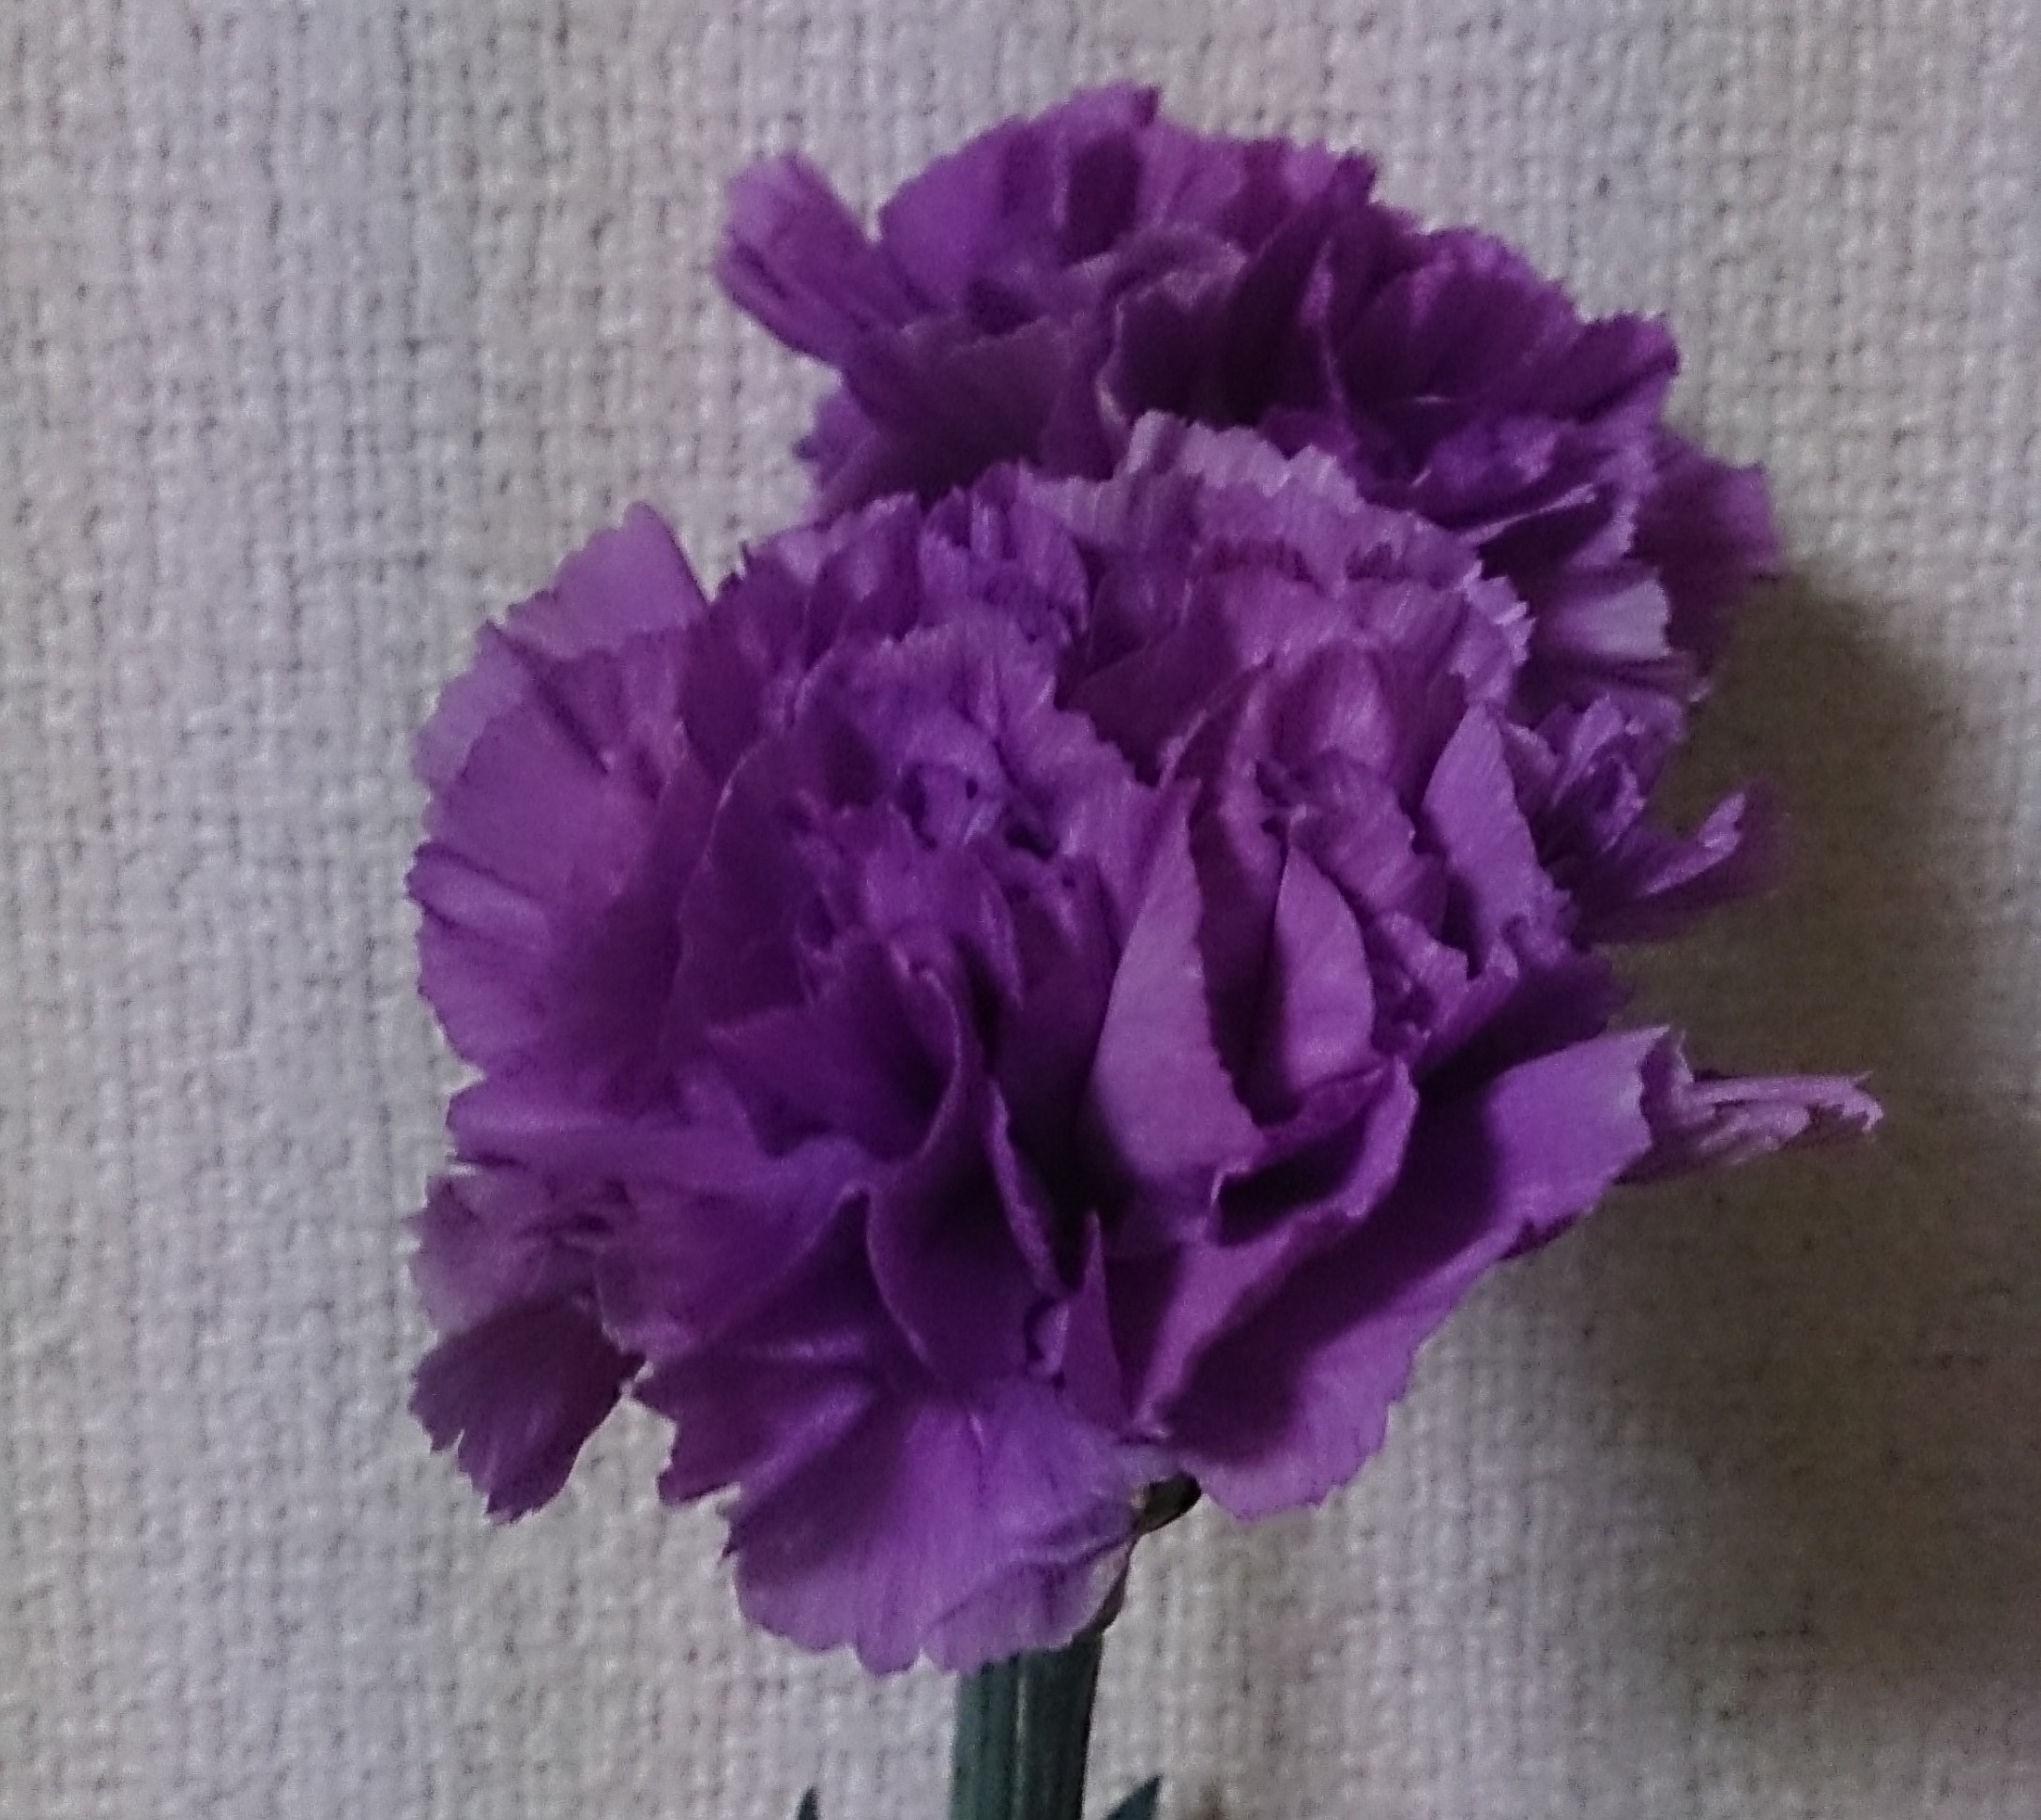 花屋の裏側お見せします レインボーローズの作り方とお値段の秘密 東京 吉祥寺のフラワーセラピーを取り入れたお花屋さん Heartfelt Flowers 花心